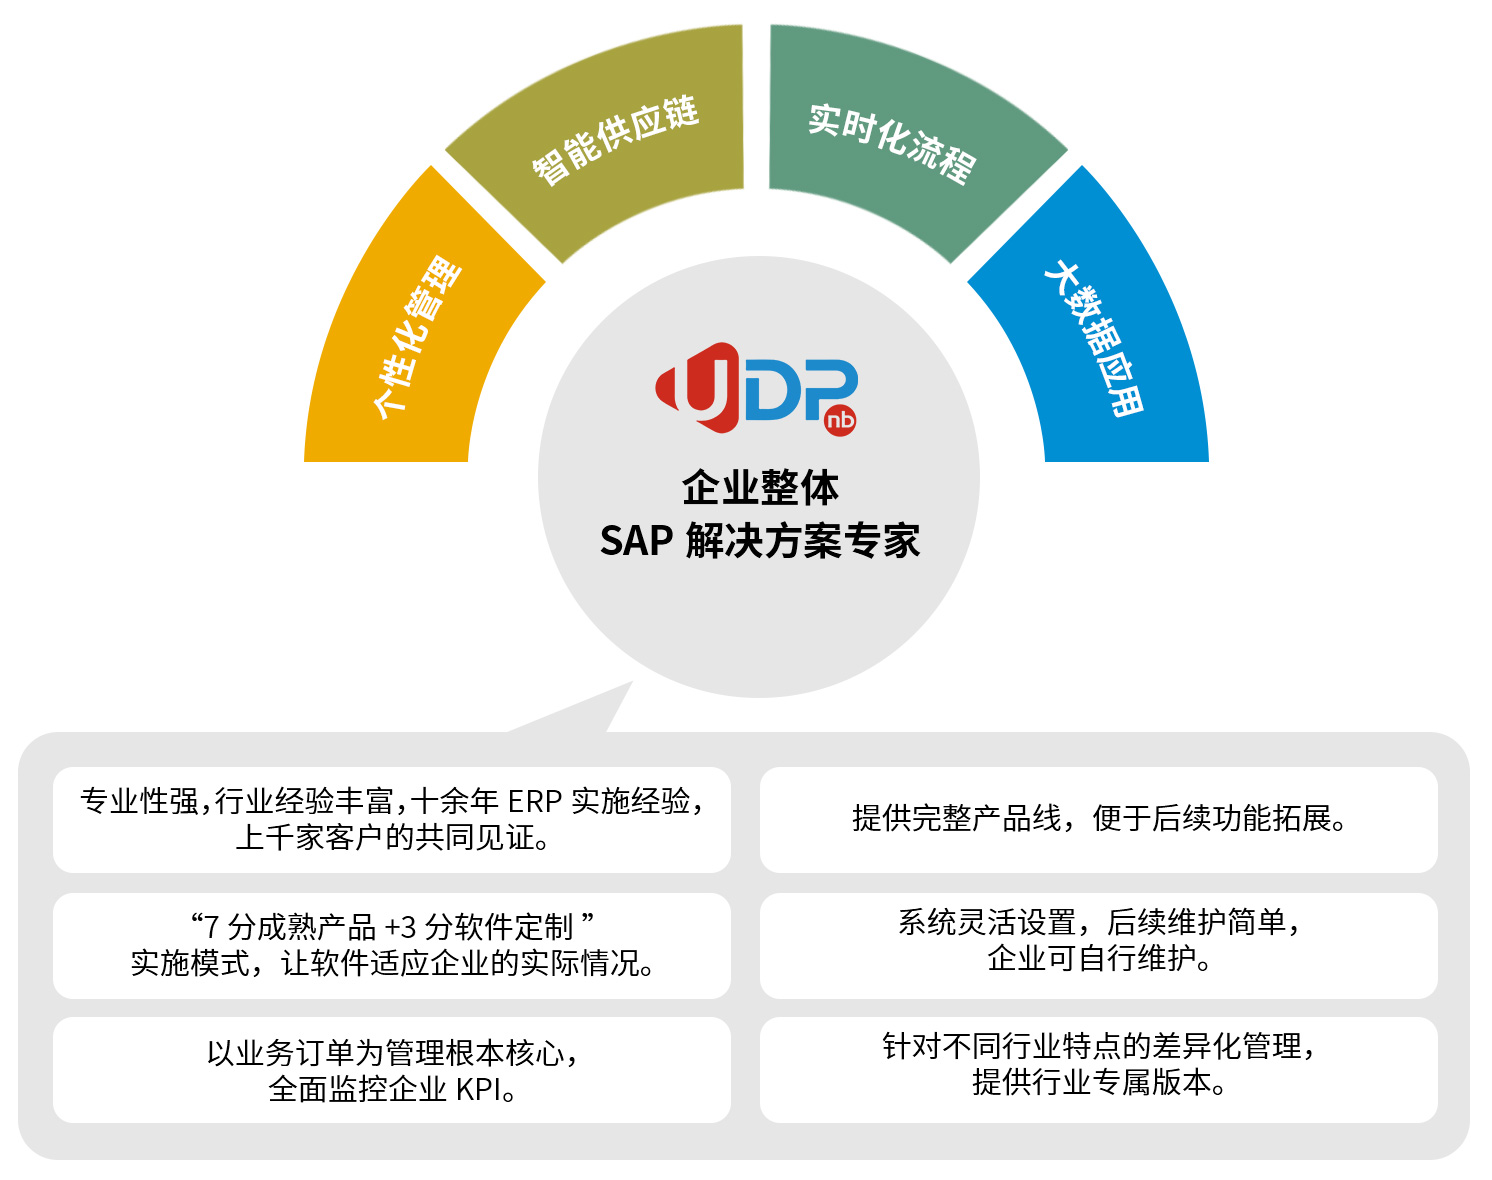 中小企业SAP系统,ERP软件,专精特新,ERP实施商,优德普,中小企业ERP,SAP ERP软件,SAP系统